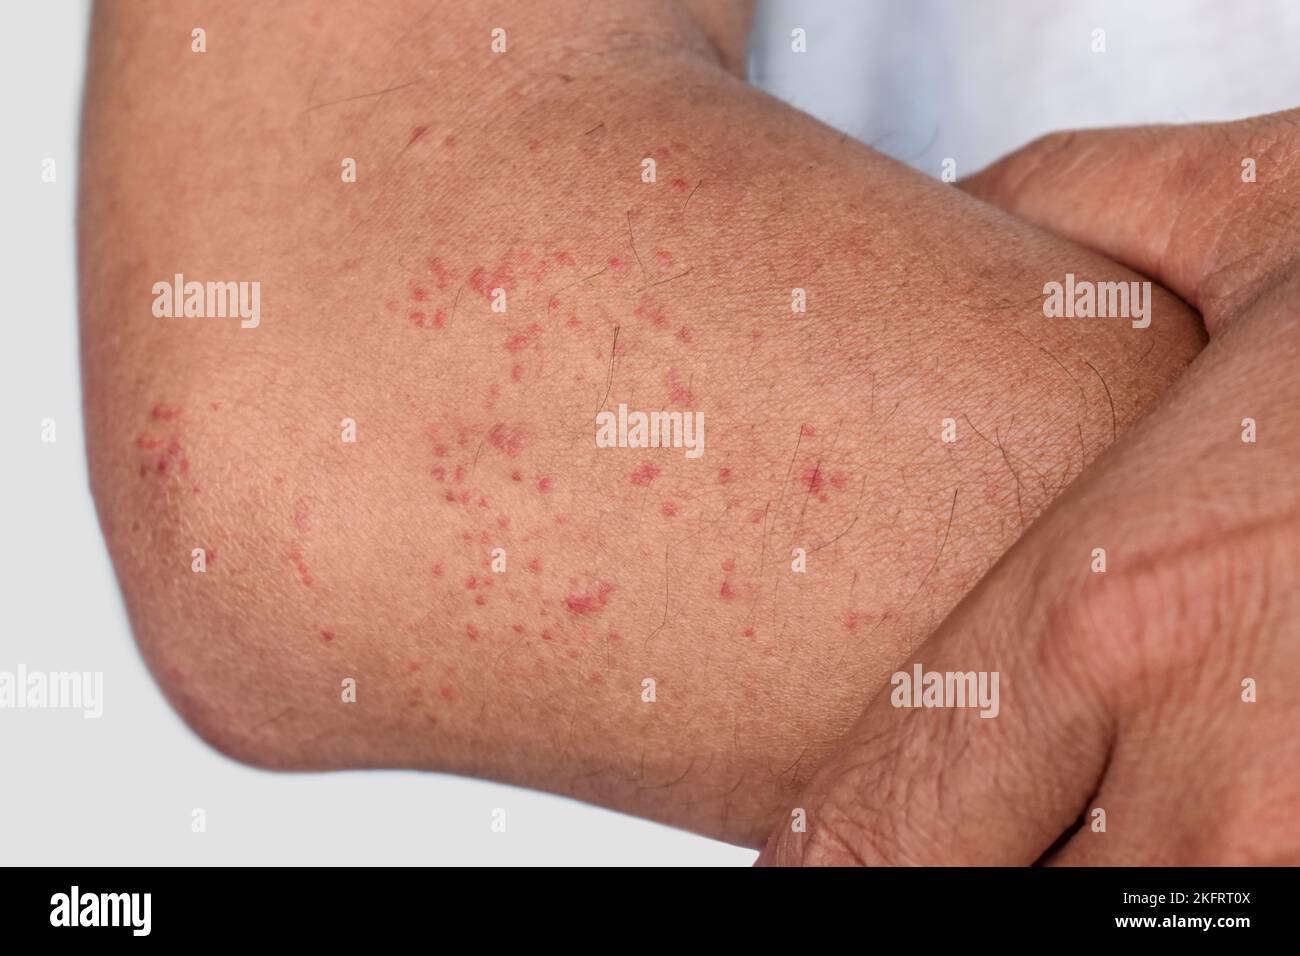 Mehrere juckende Moskitos oder Insektenbiss-Keuchen; rote Flecken auf dem Unterarm des erwachsenen Mannes aus Südostasien. Stockfoto